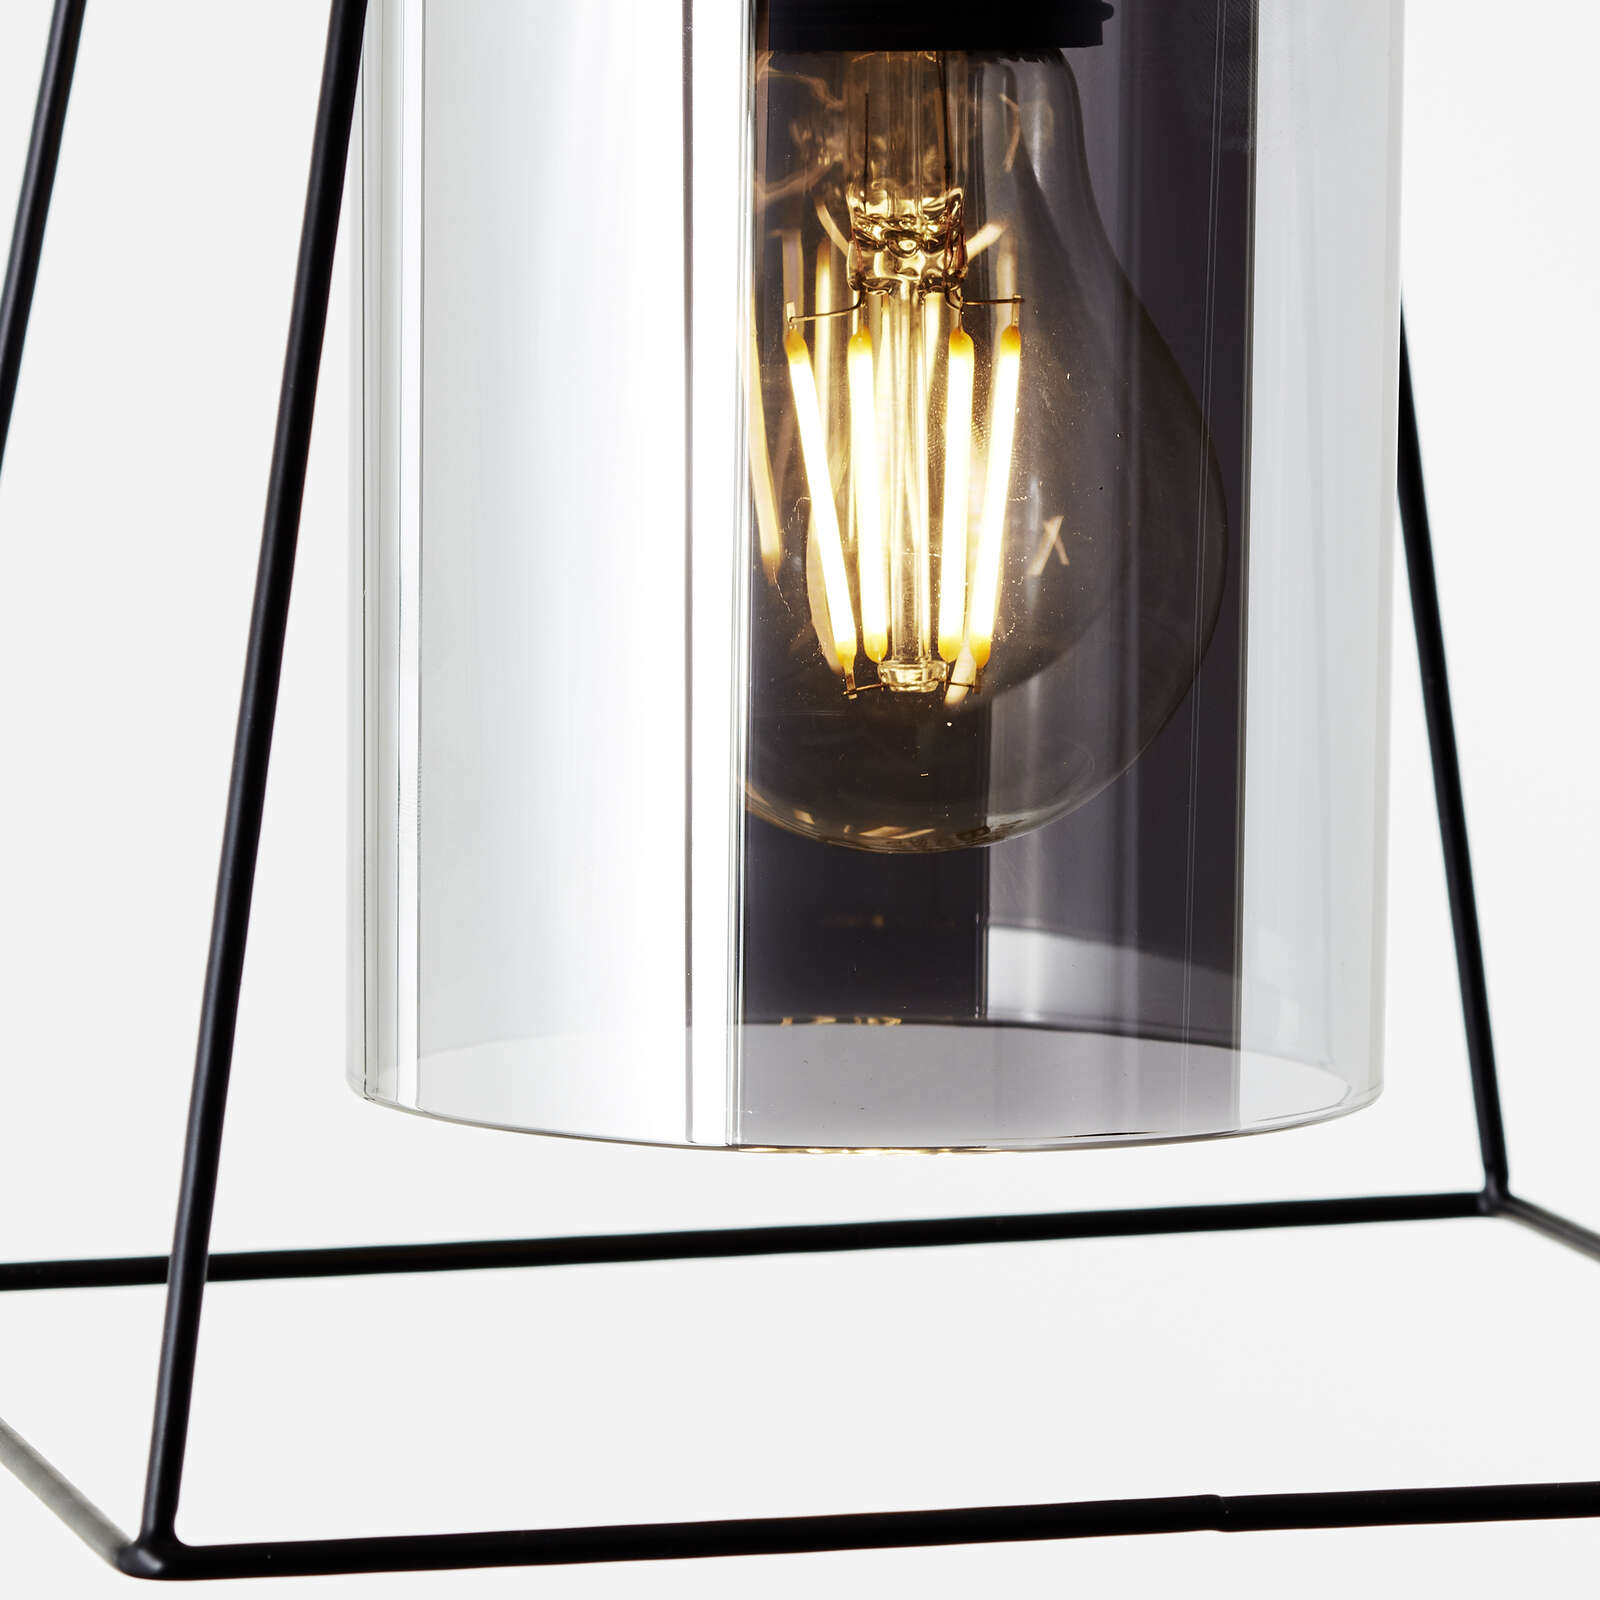             Glazen hanglamp - Lennox 1 - Zwart
        